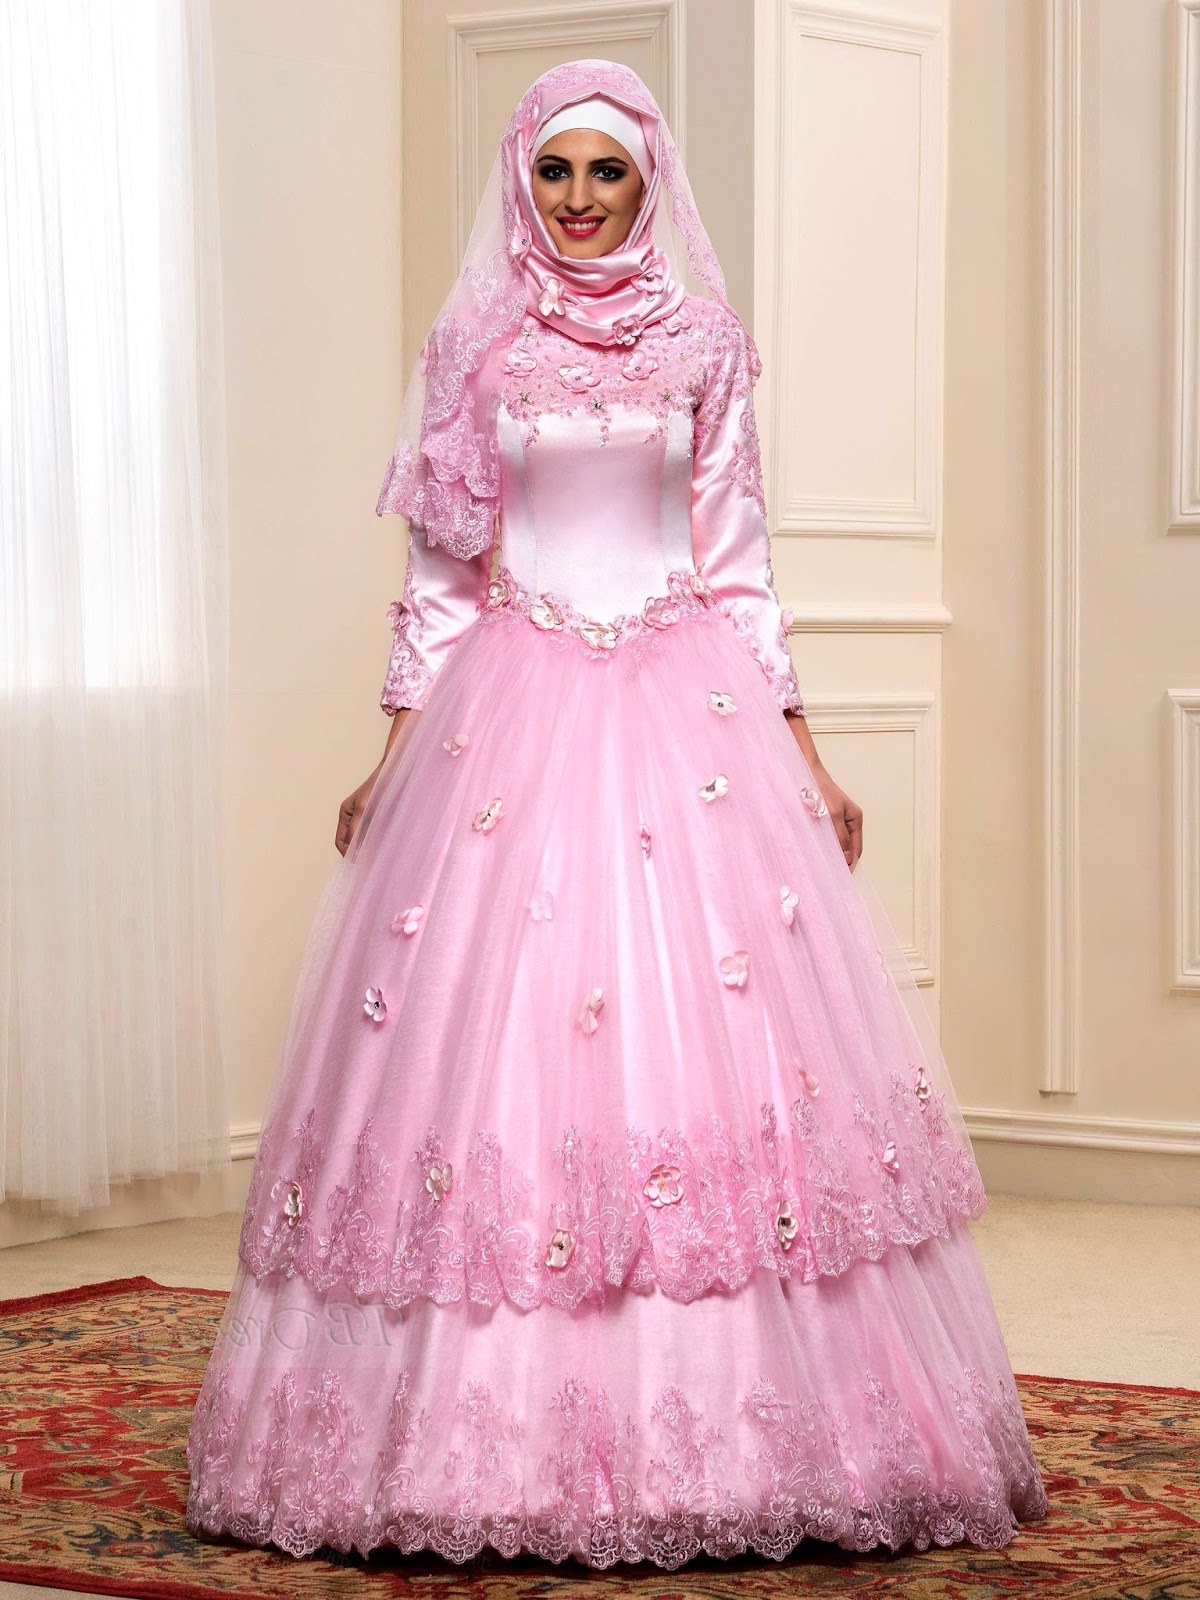 Bentuk Gamis Untuk Seragam Pernikahan Nkde 21 Gaun Pernikahan Wanita Arab Konsep Penting